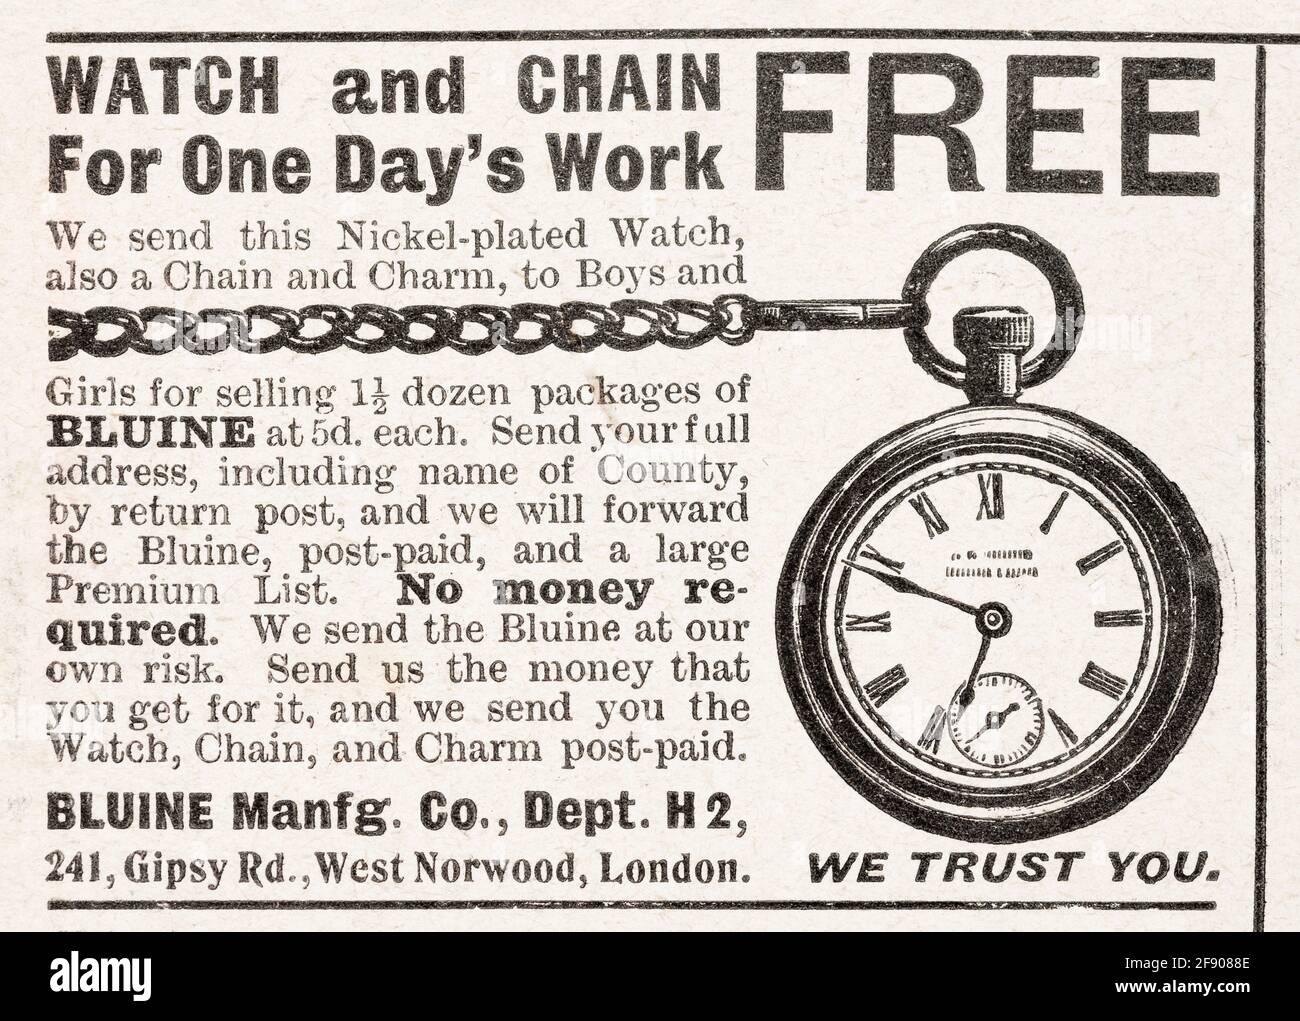 Vecchio spot d'orologio vittoriano d'epoca dal 1902 - prima dell'alba degli standard pubblicitari. Storia della pubblicità, vecchi annunci pubblicitari, storia della pubblicità. Foto Stock